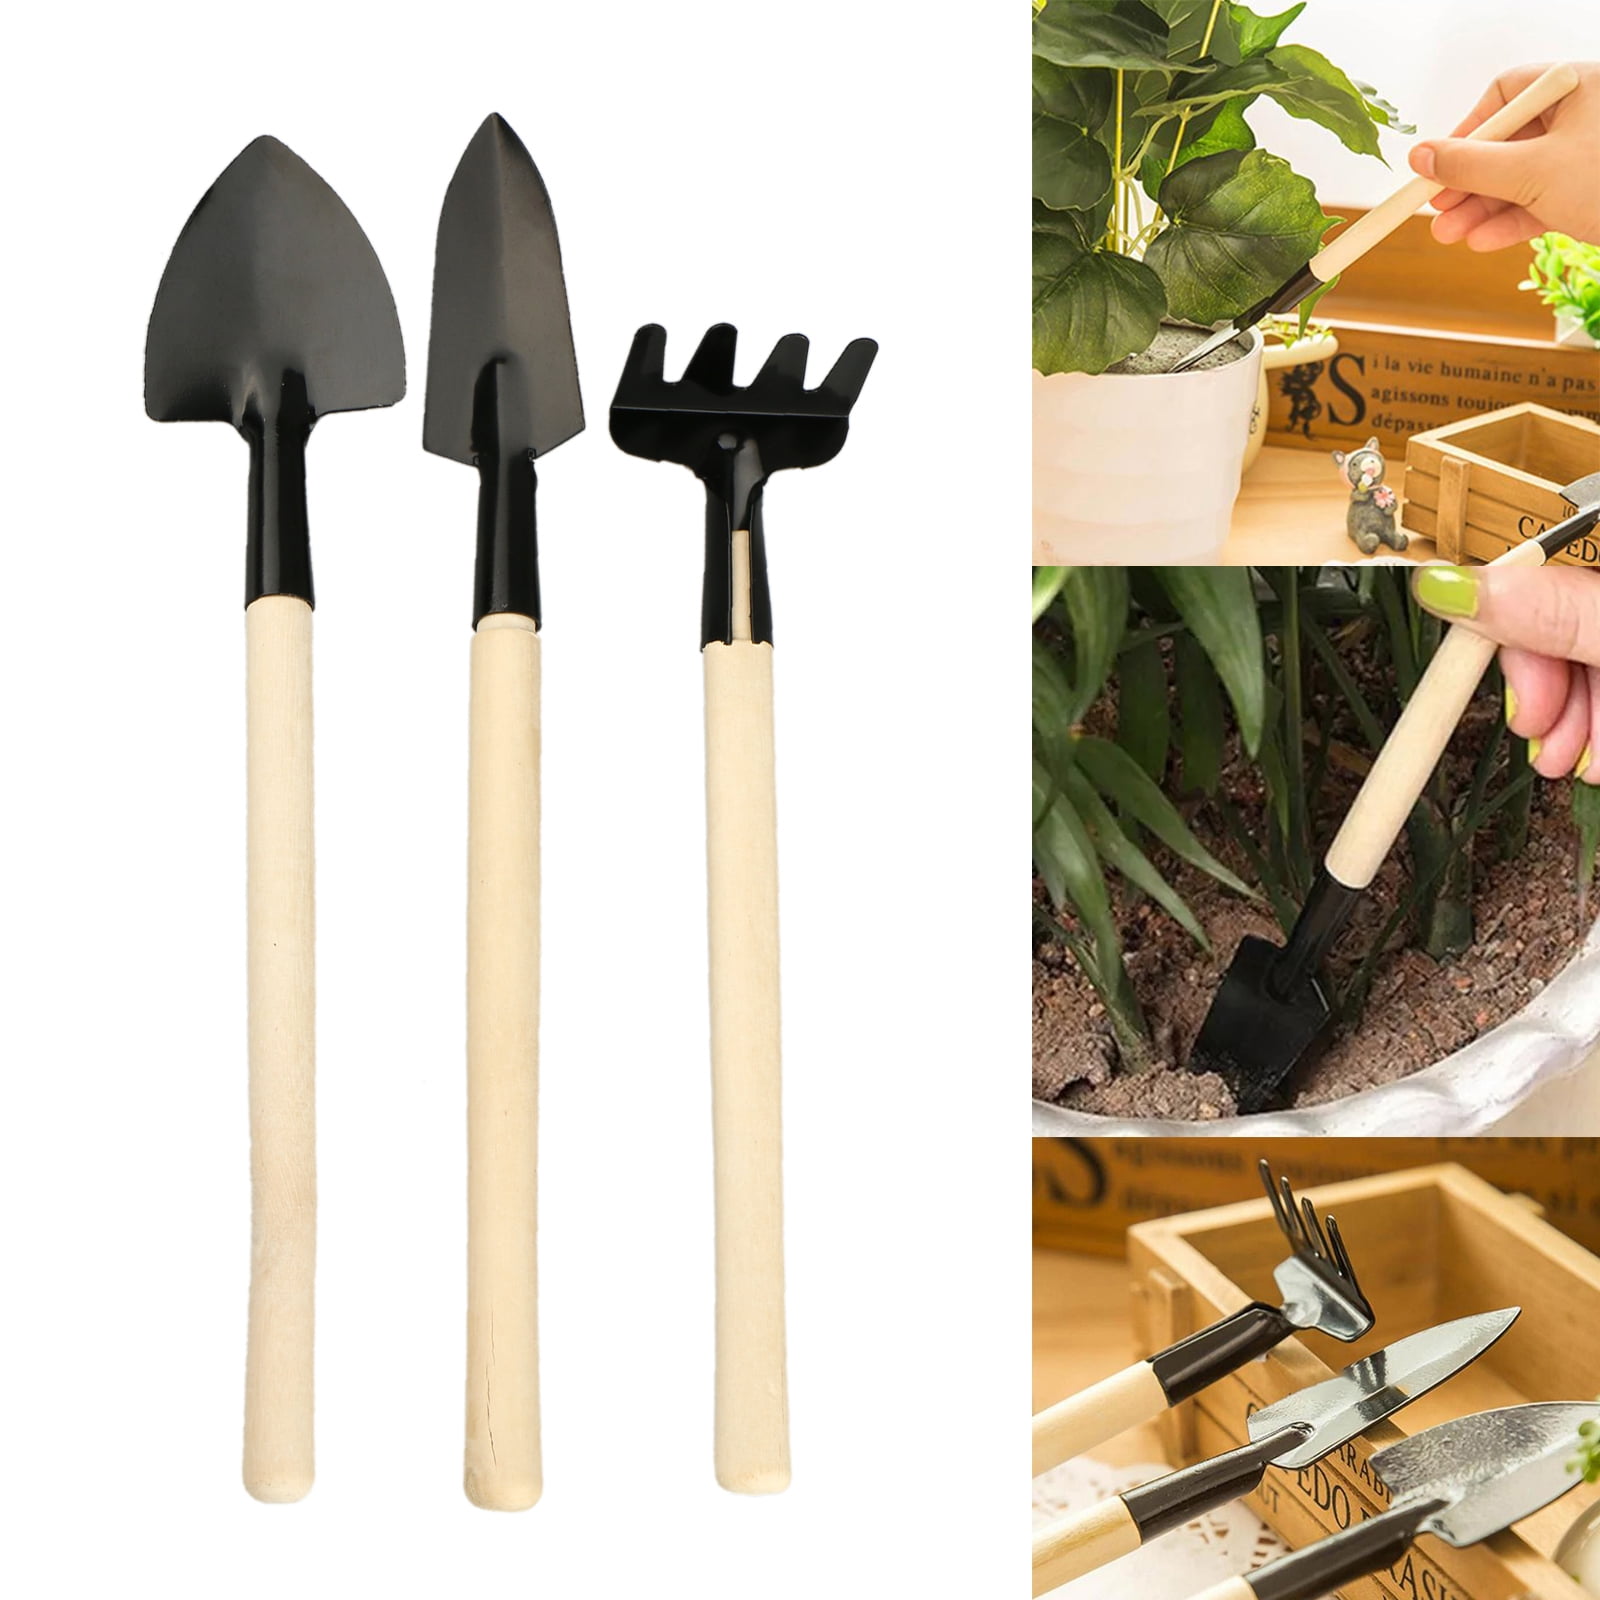 Trowel Rake Hoe 3PCS Garden Tools Set Stainless /& Durable Gardening Hand Tools Kit